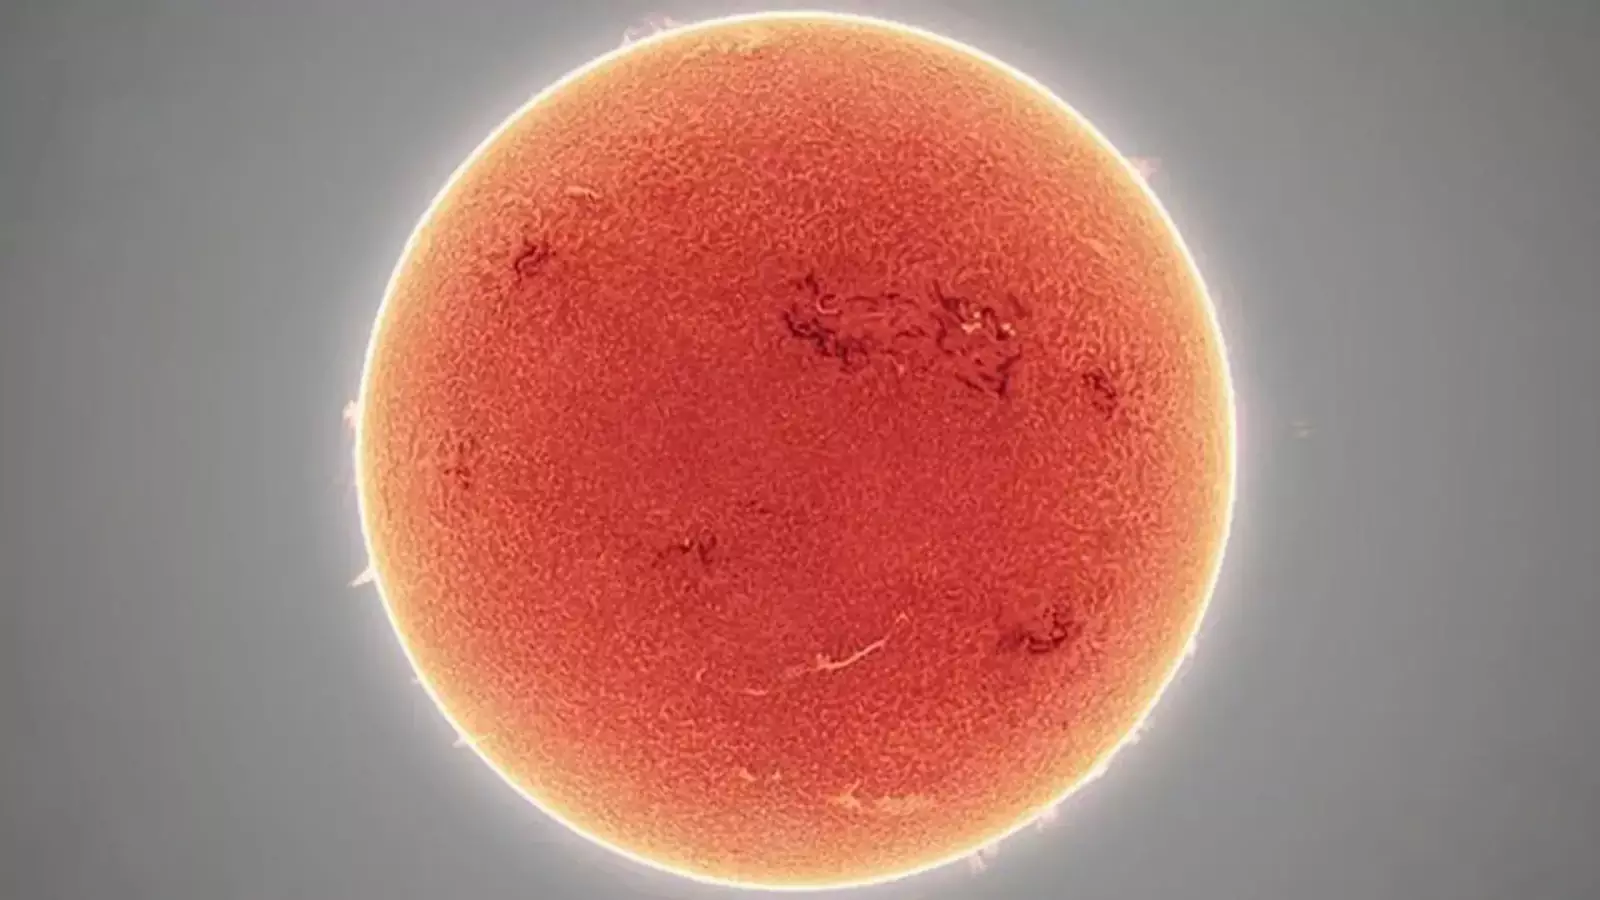 Снимок солнца, сделанный в мае астрофотографом.